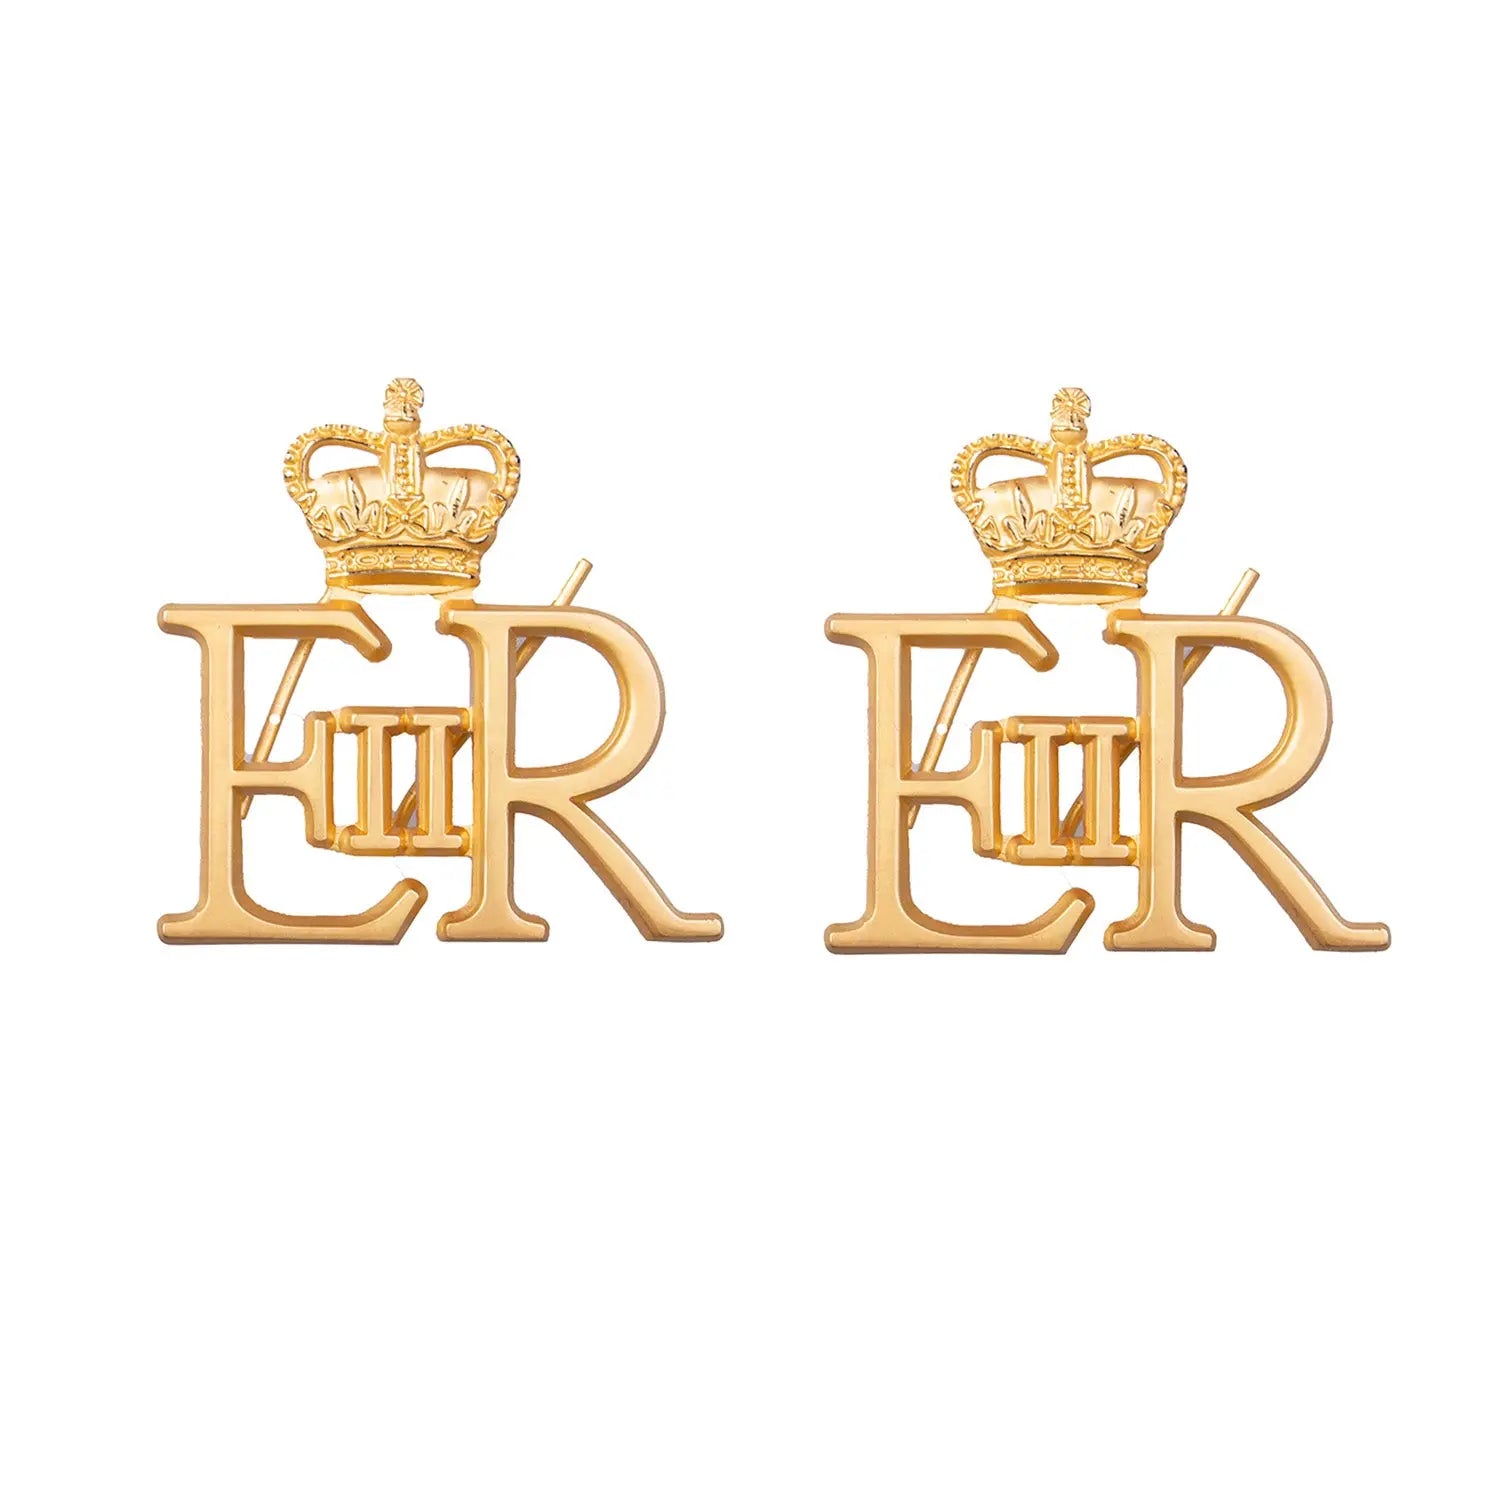 EIIR Shoulder Insignia Royal Cypher and Crown RAF Wyedean